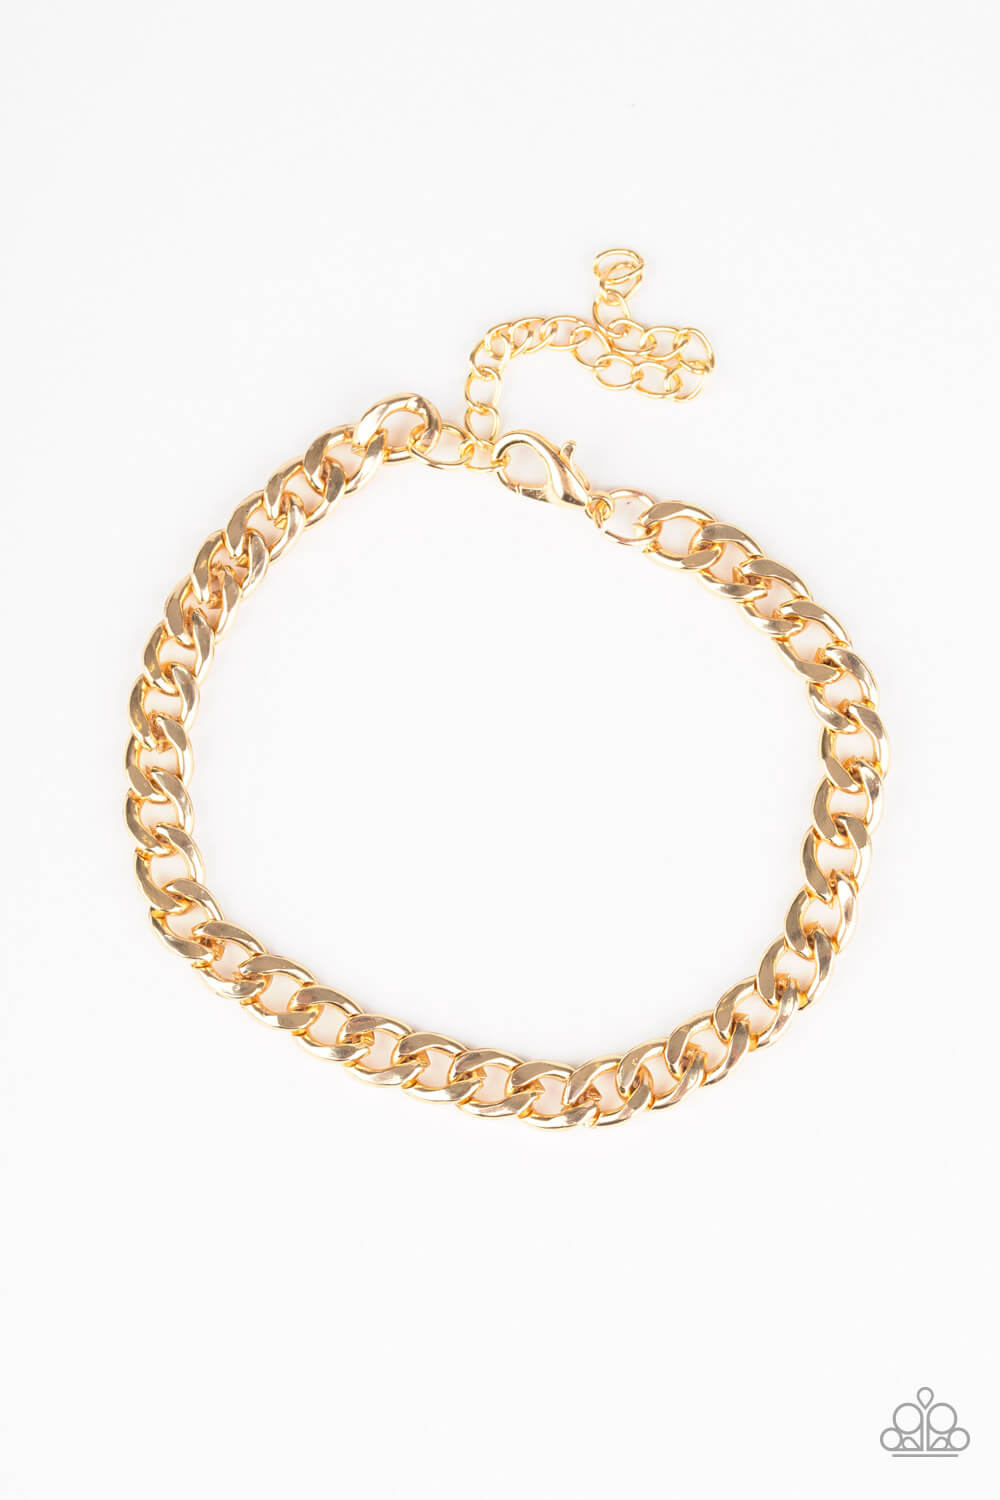 Halftime - Gold Bracelet - Princess Glam Shop